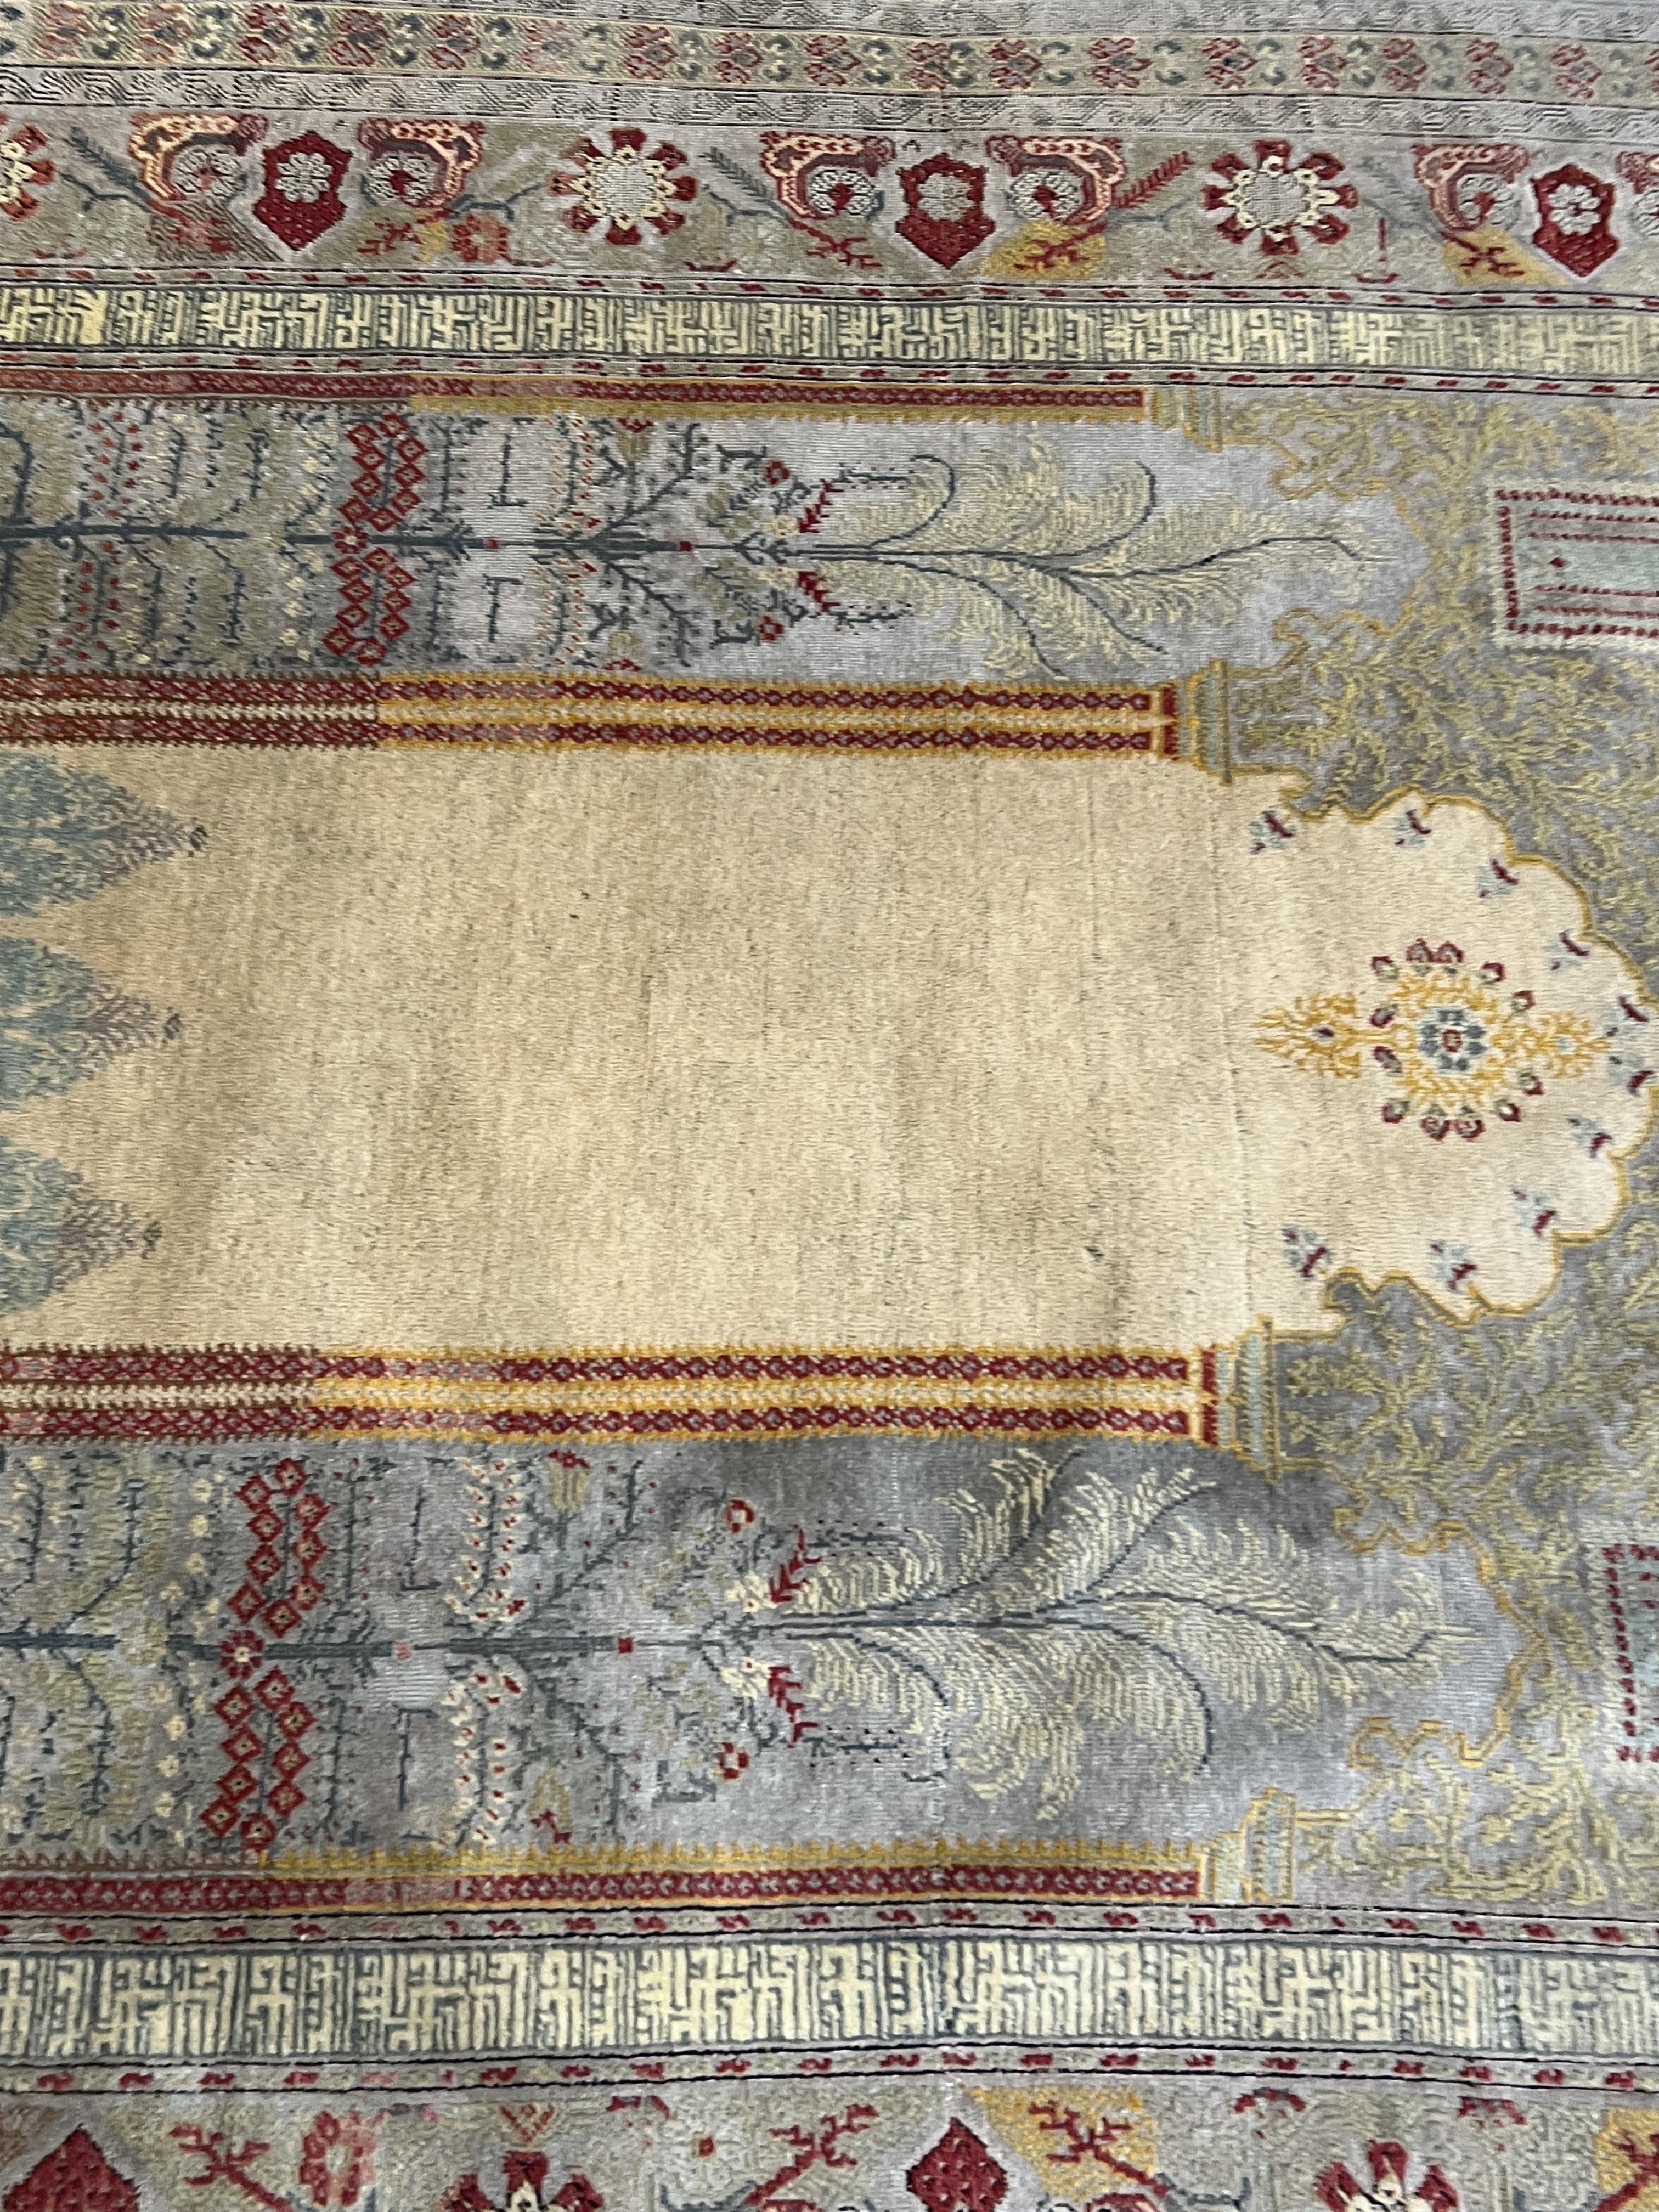 A Turkish silk prayer rug, 205 x 122cm